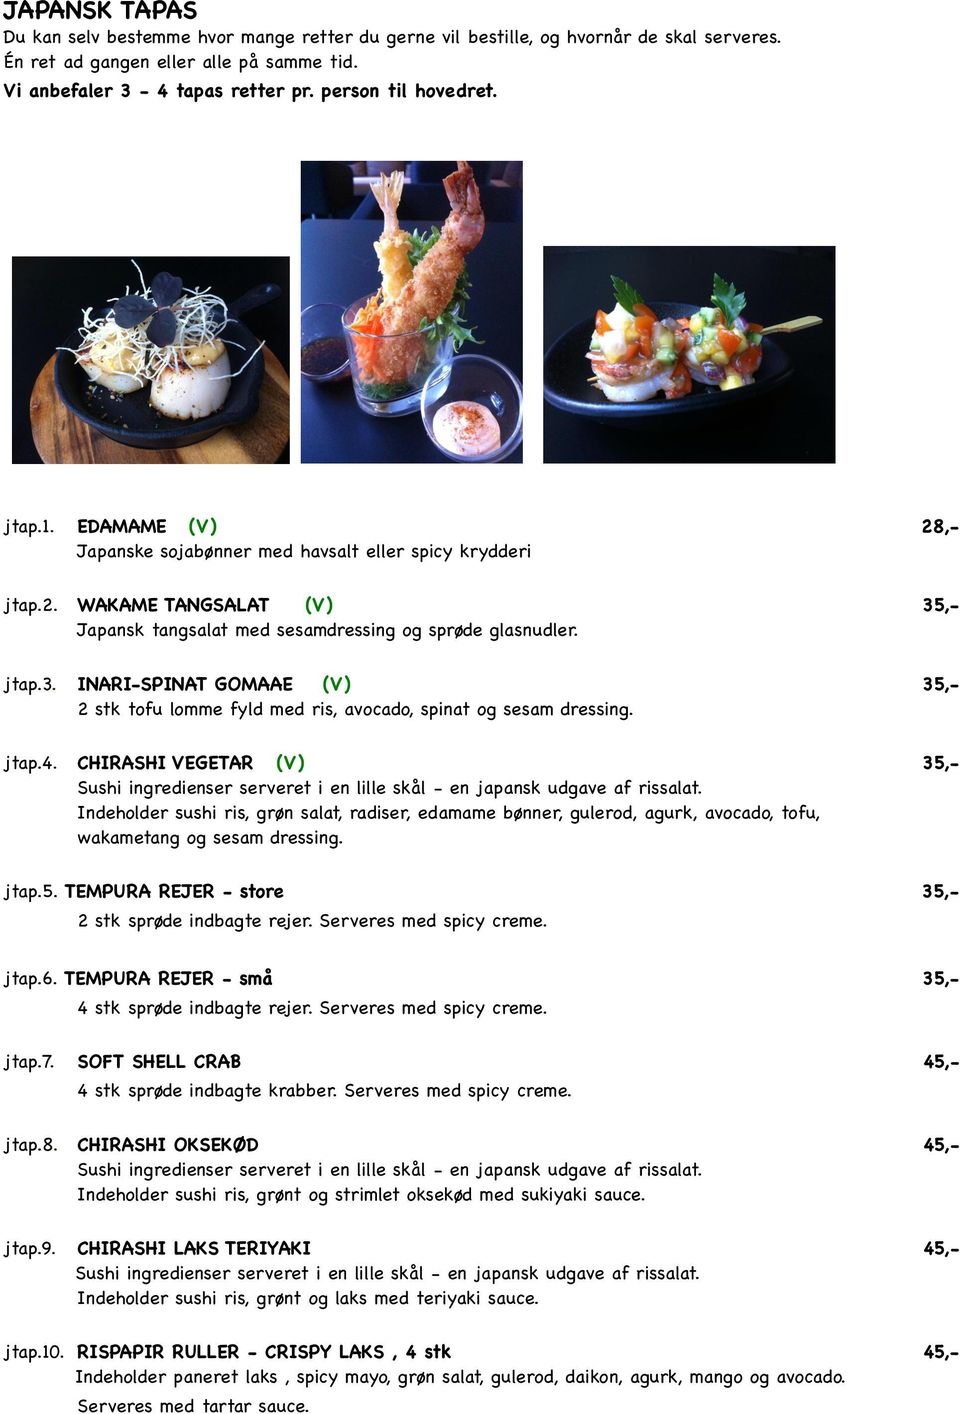 jtap.3.! INARI-SPINAT GOMAAE (V)! 35,-! 2 stk tofu lomme fyld med ris, avocado, spinat og sesam dressing. jtap.4.! CHIRASHI VEGETAR (V)! 35,-!! Sushi ingredienser serveret i en lille skål - en japansk udgave af rissalat.